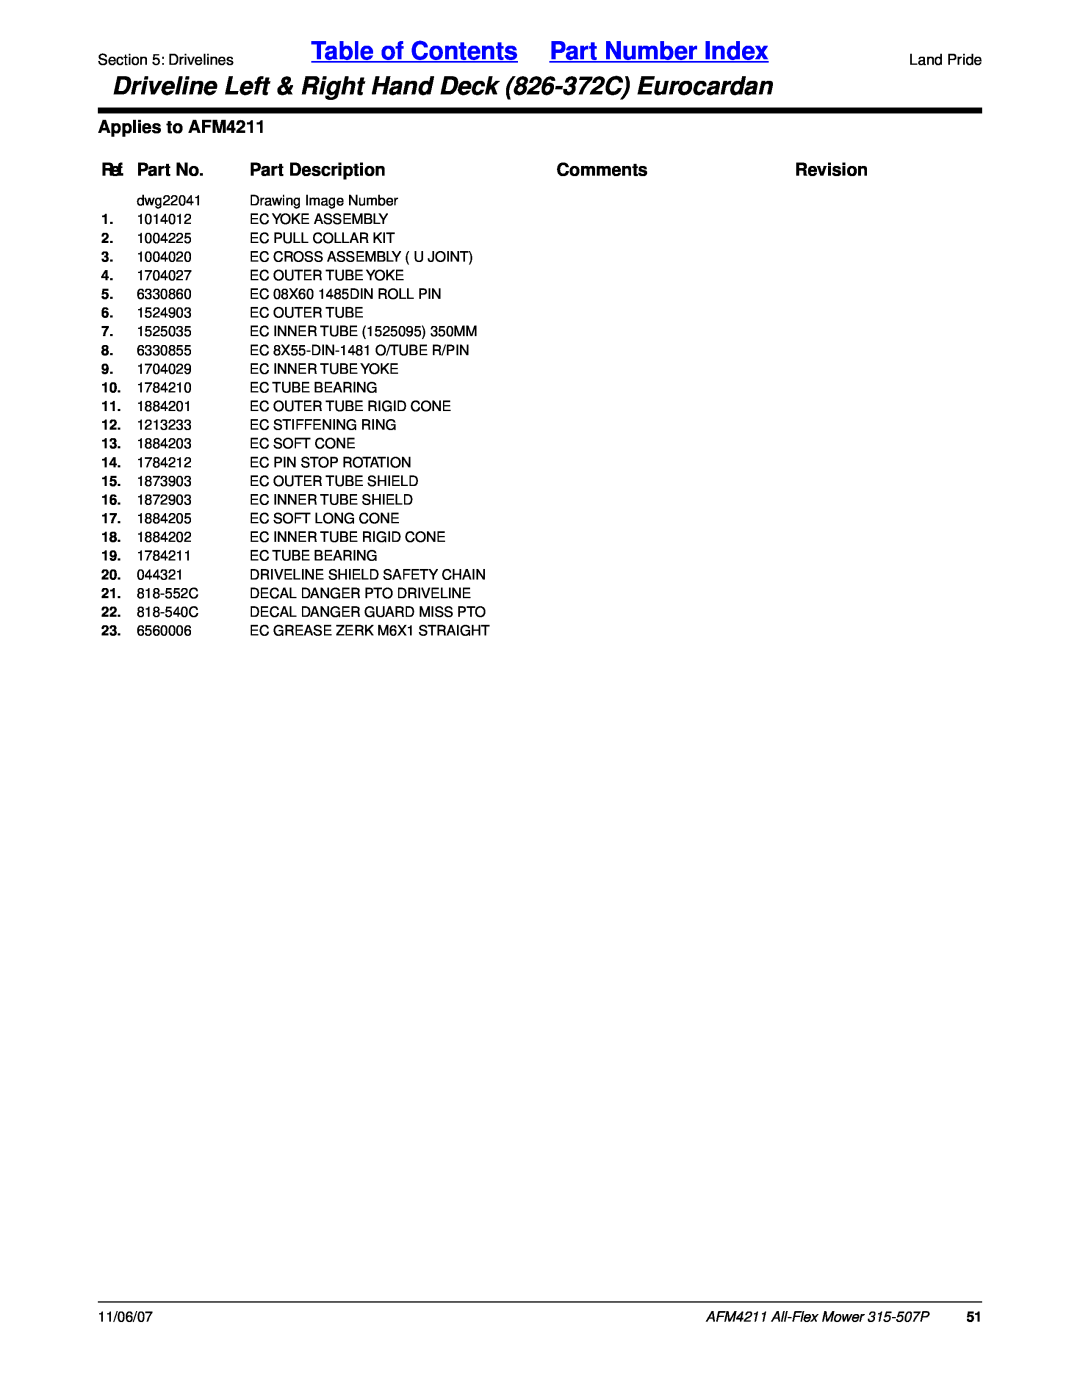 Land Pride All-Flex Mower manual Table of Contents Part Number Index, Applies to AFM4211, Ref. Part No, Part Description 